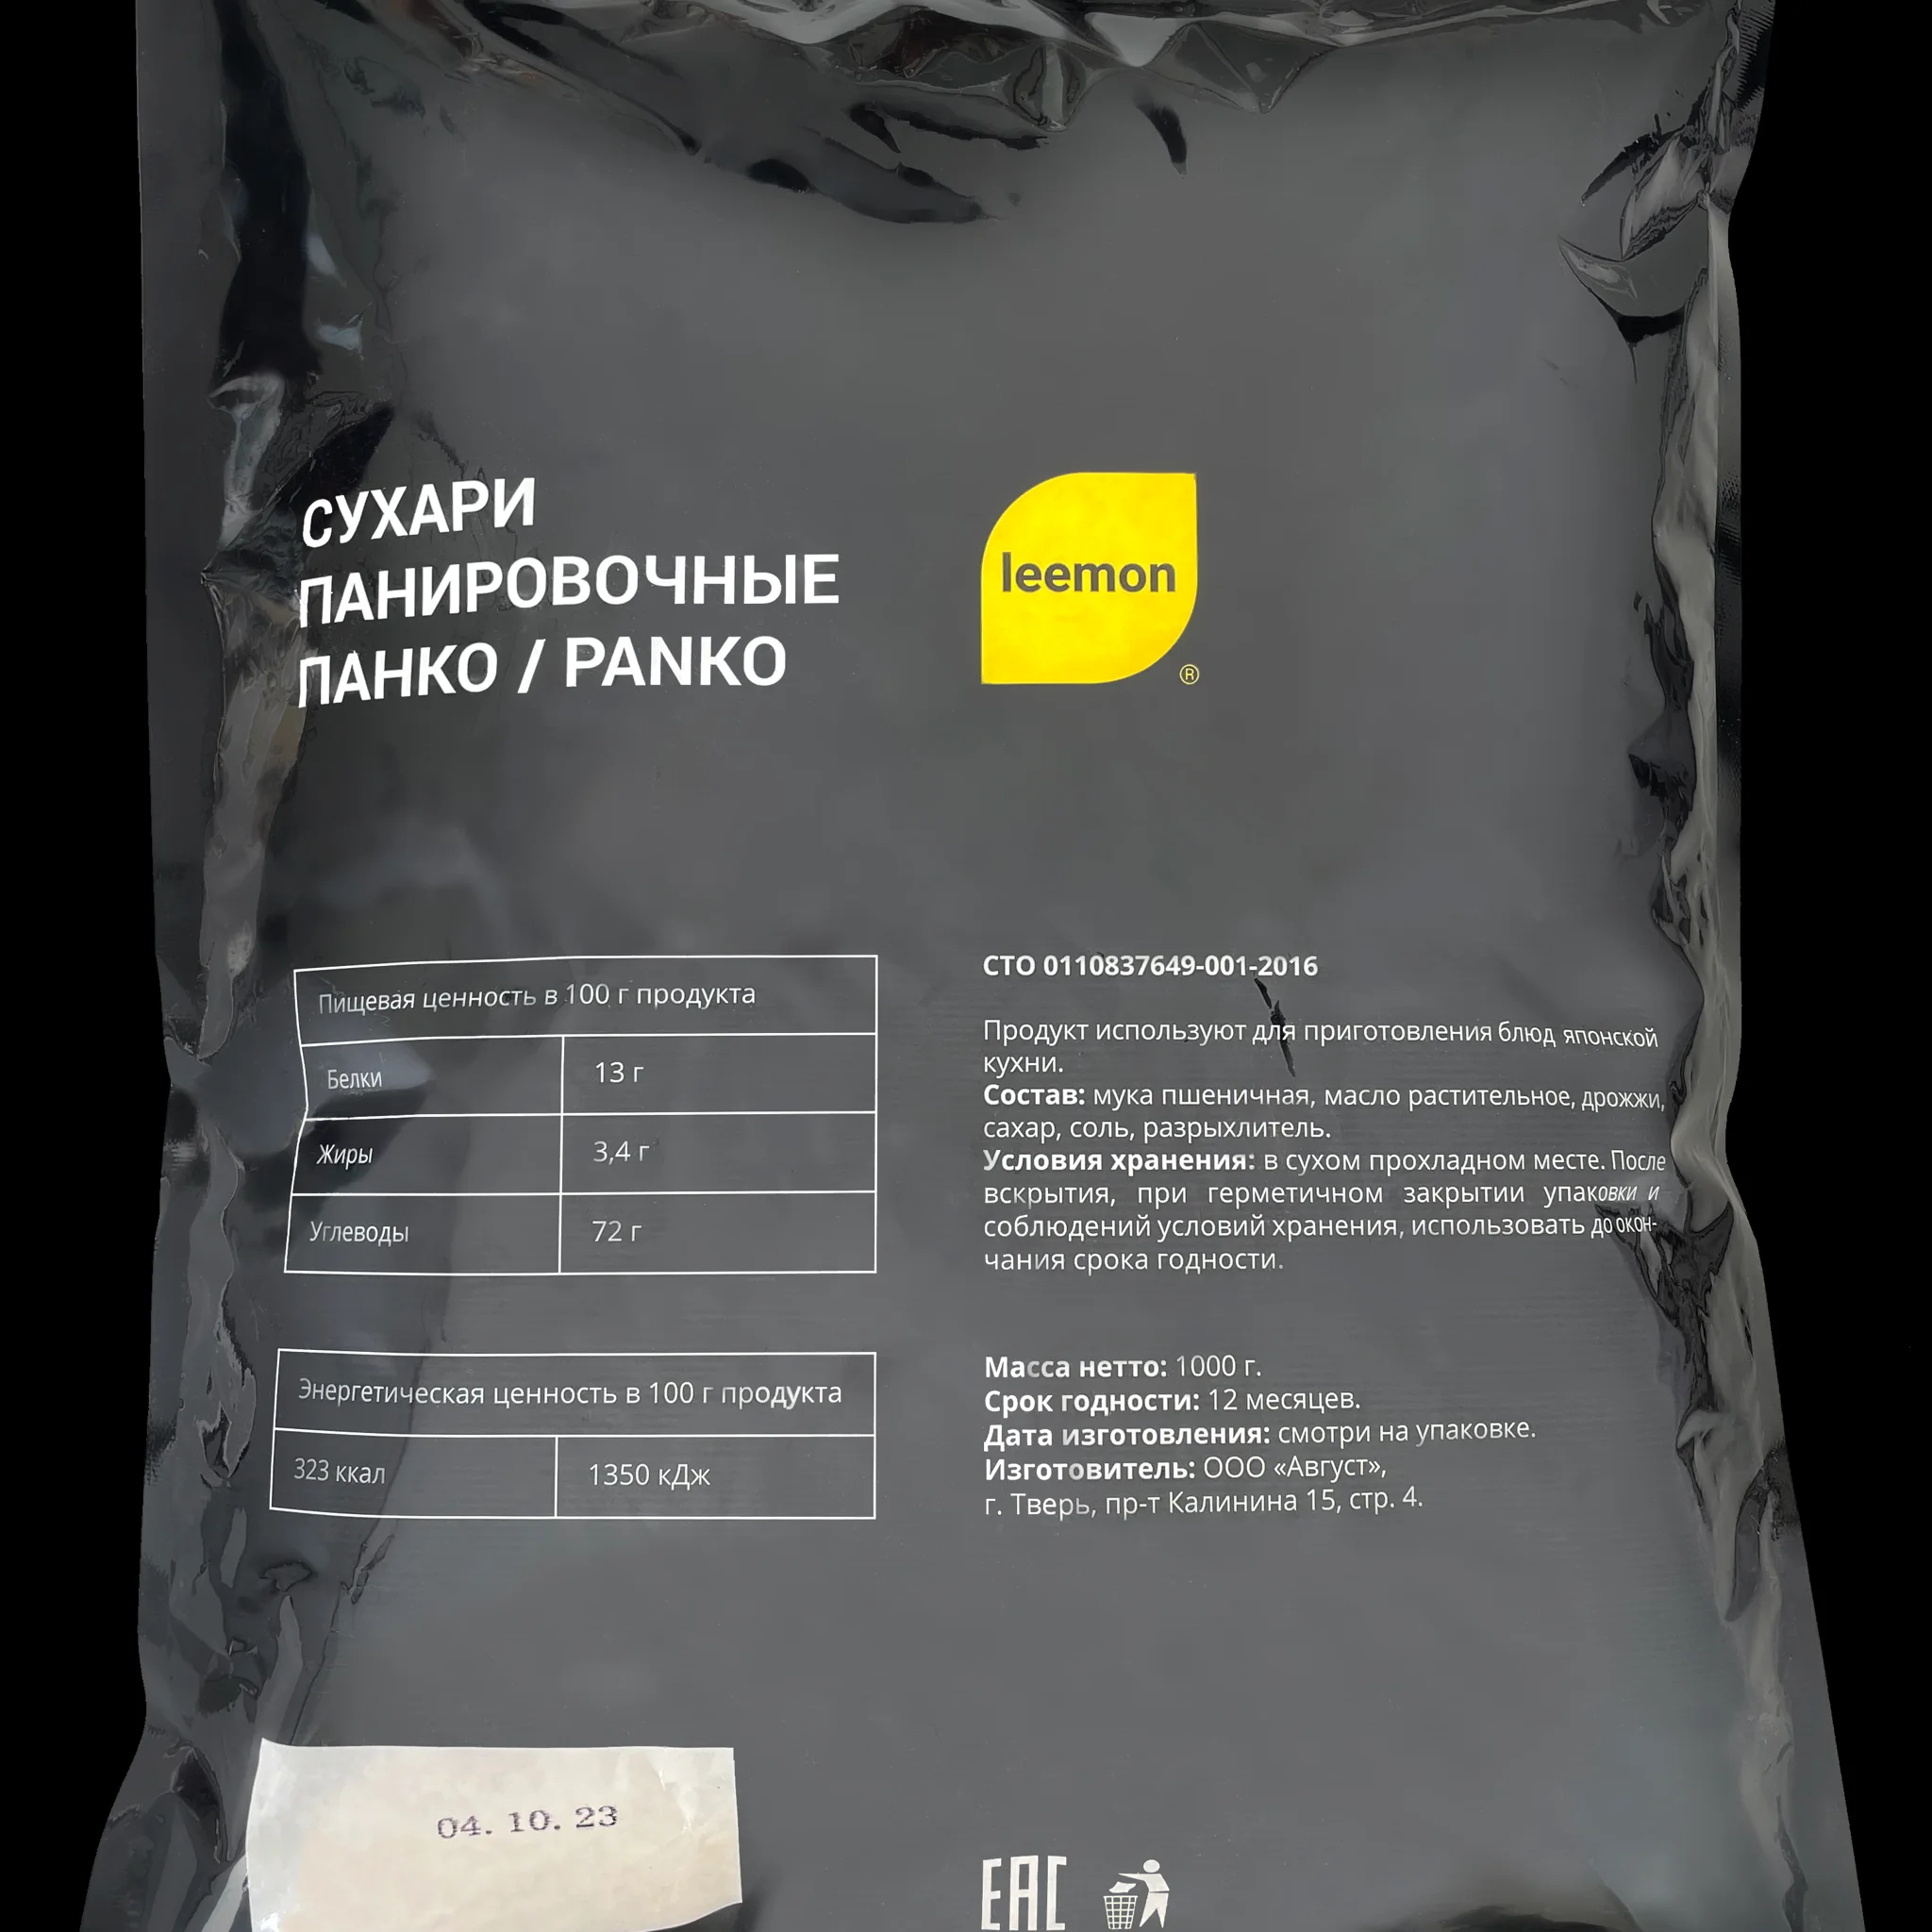 Сухари панировочные ПАНКО / PANKO 1 кг